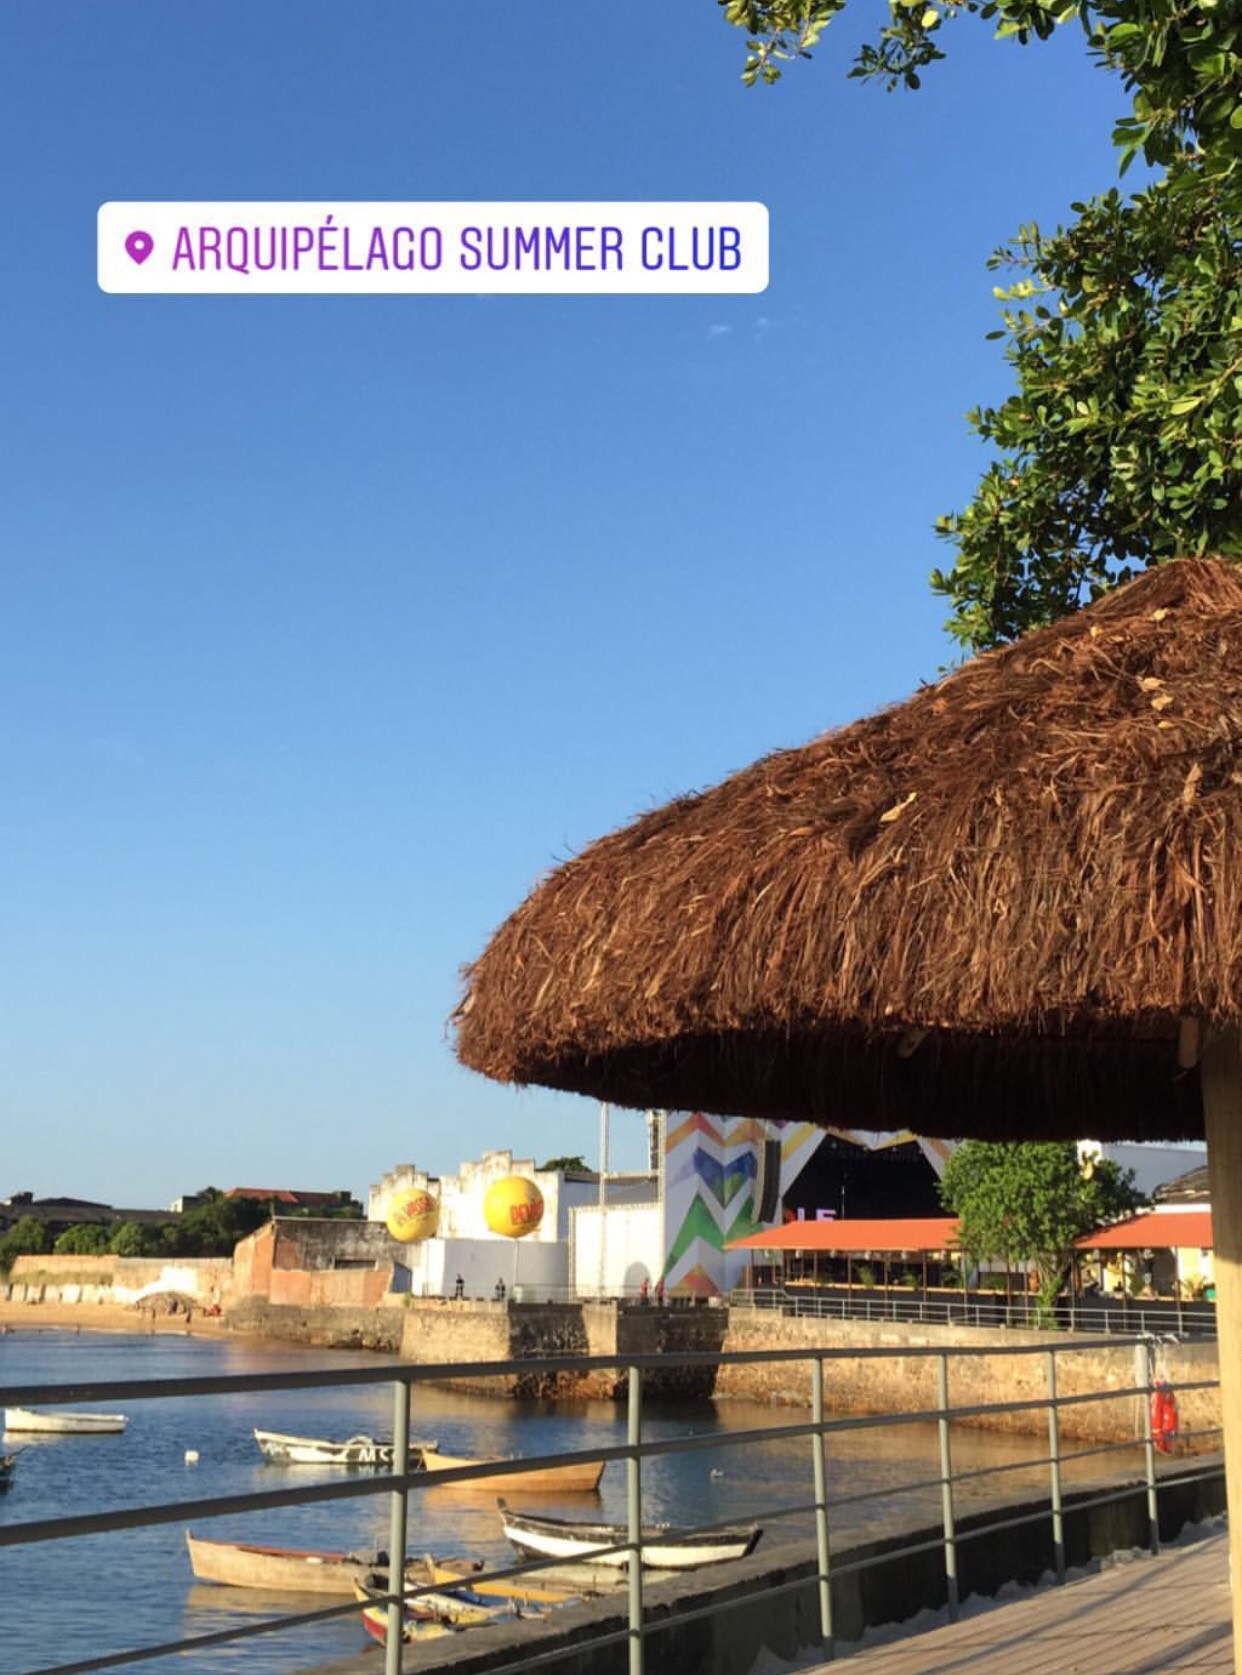 Devido a problemas operacionais, Arquipélago Summer Club adia festas que aconteceriam neste fim de semana 